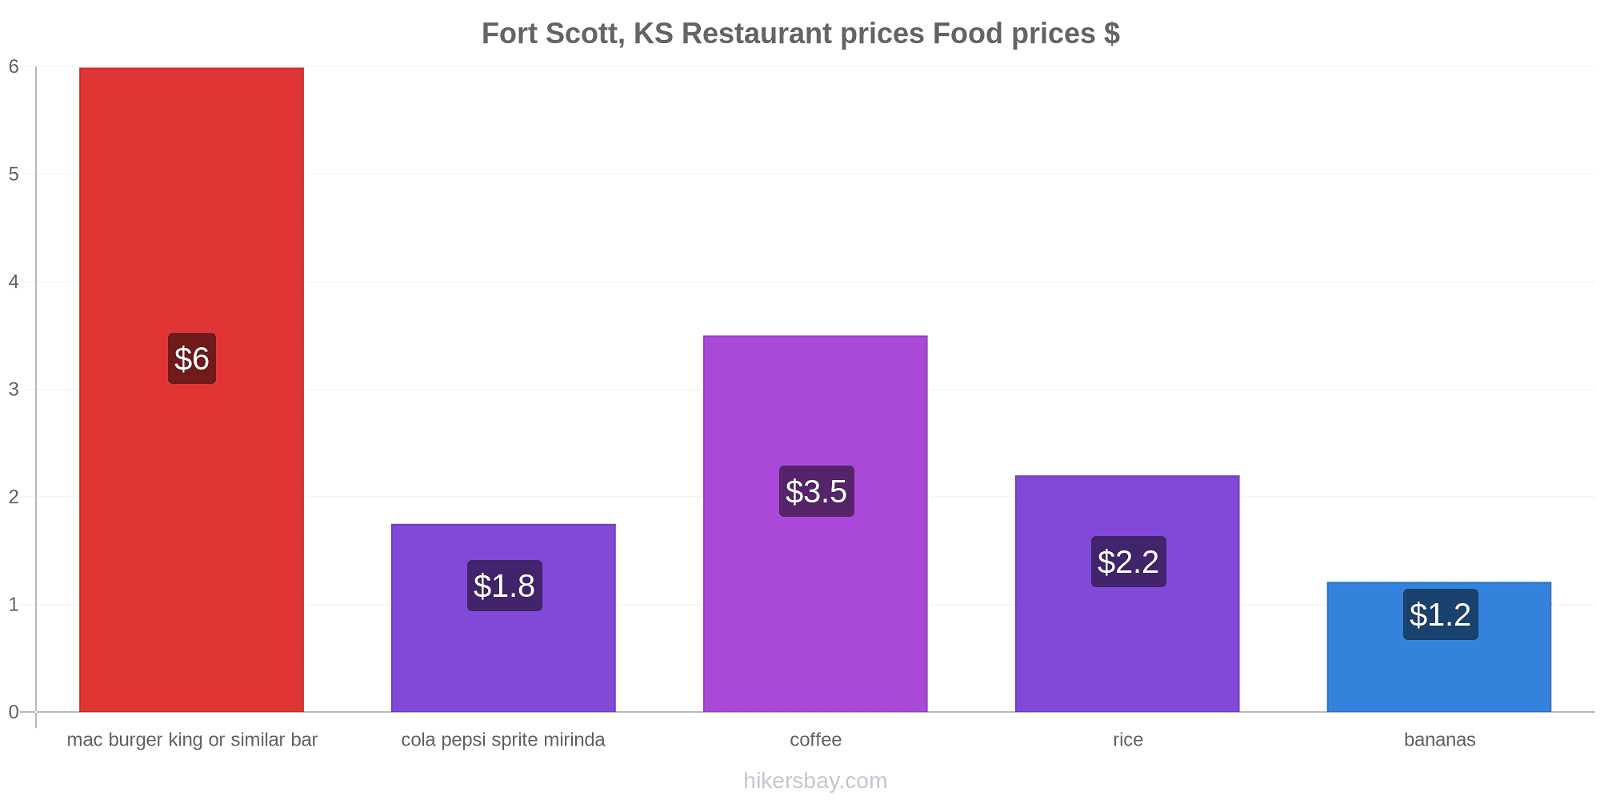 Fort Scott, KS price changes hikersbay.com